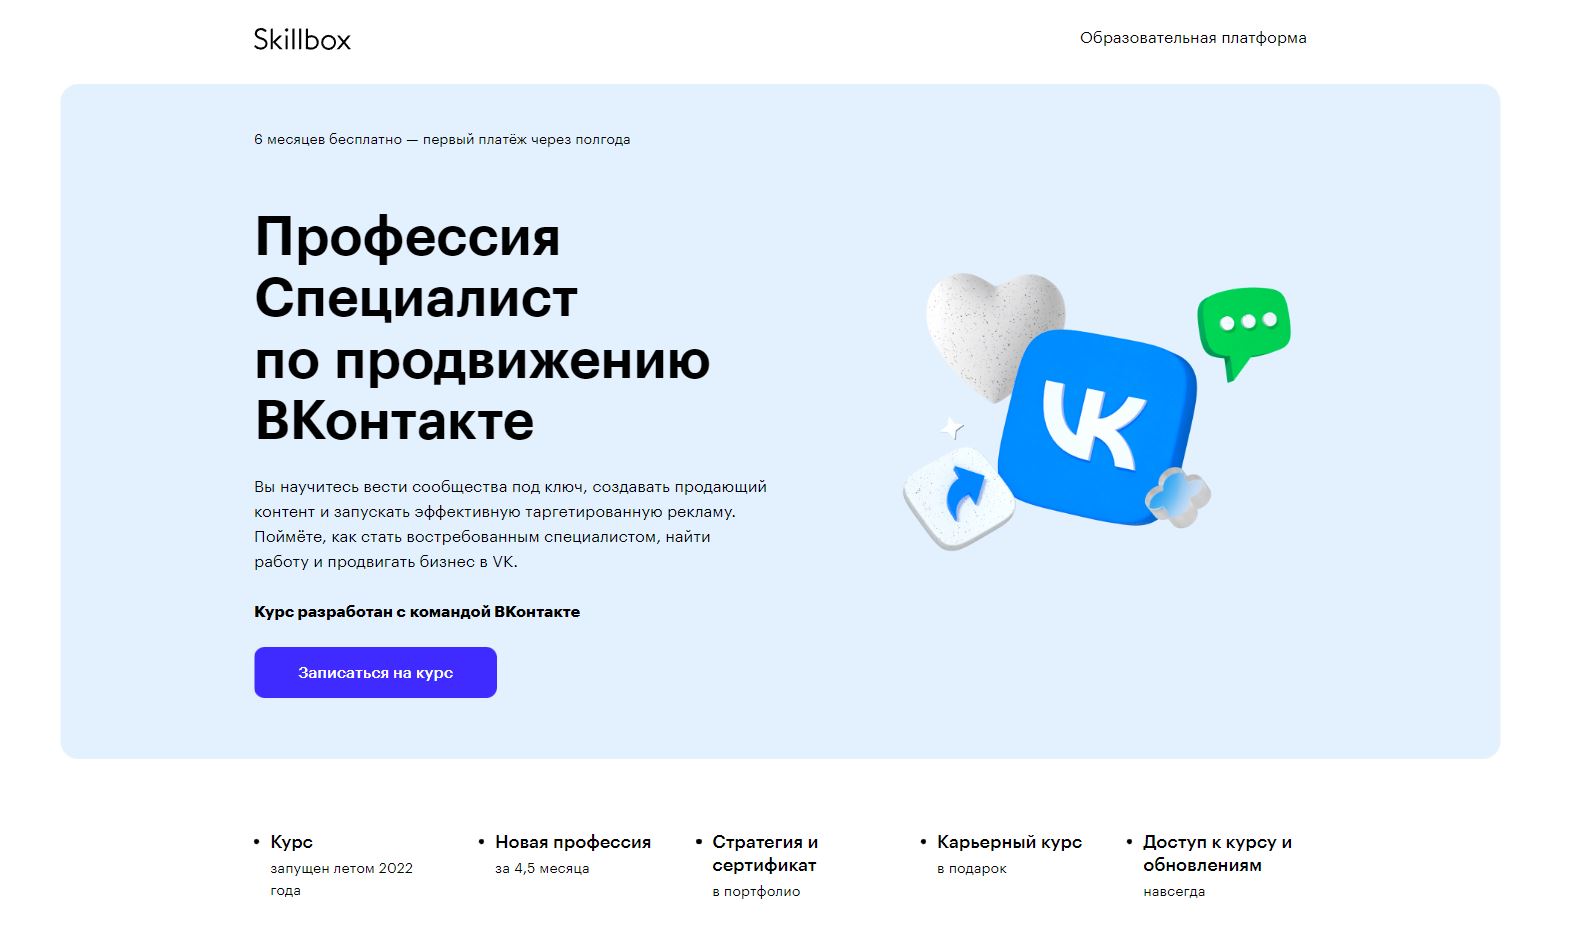 ТОП-10 онлайн-курсов по таргетированной рекламе во Вконтакте 2022 - Skillbox. «Профессия Специалист по продвижению ВКонтакте» - фото